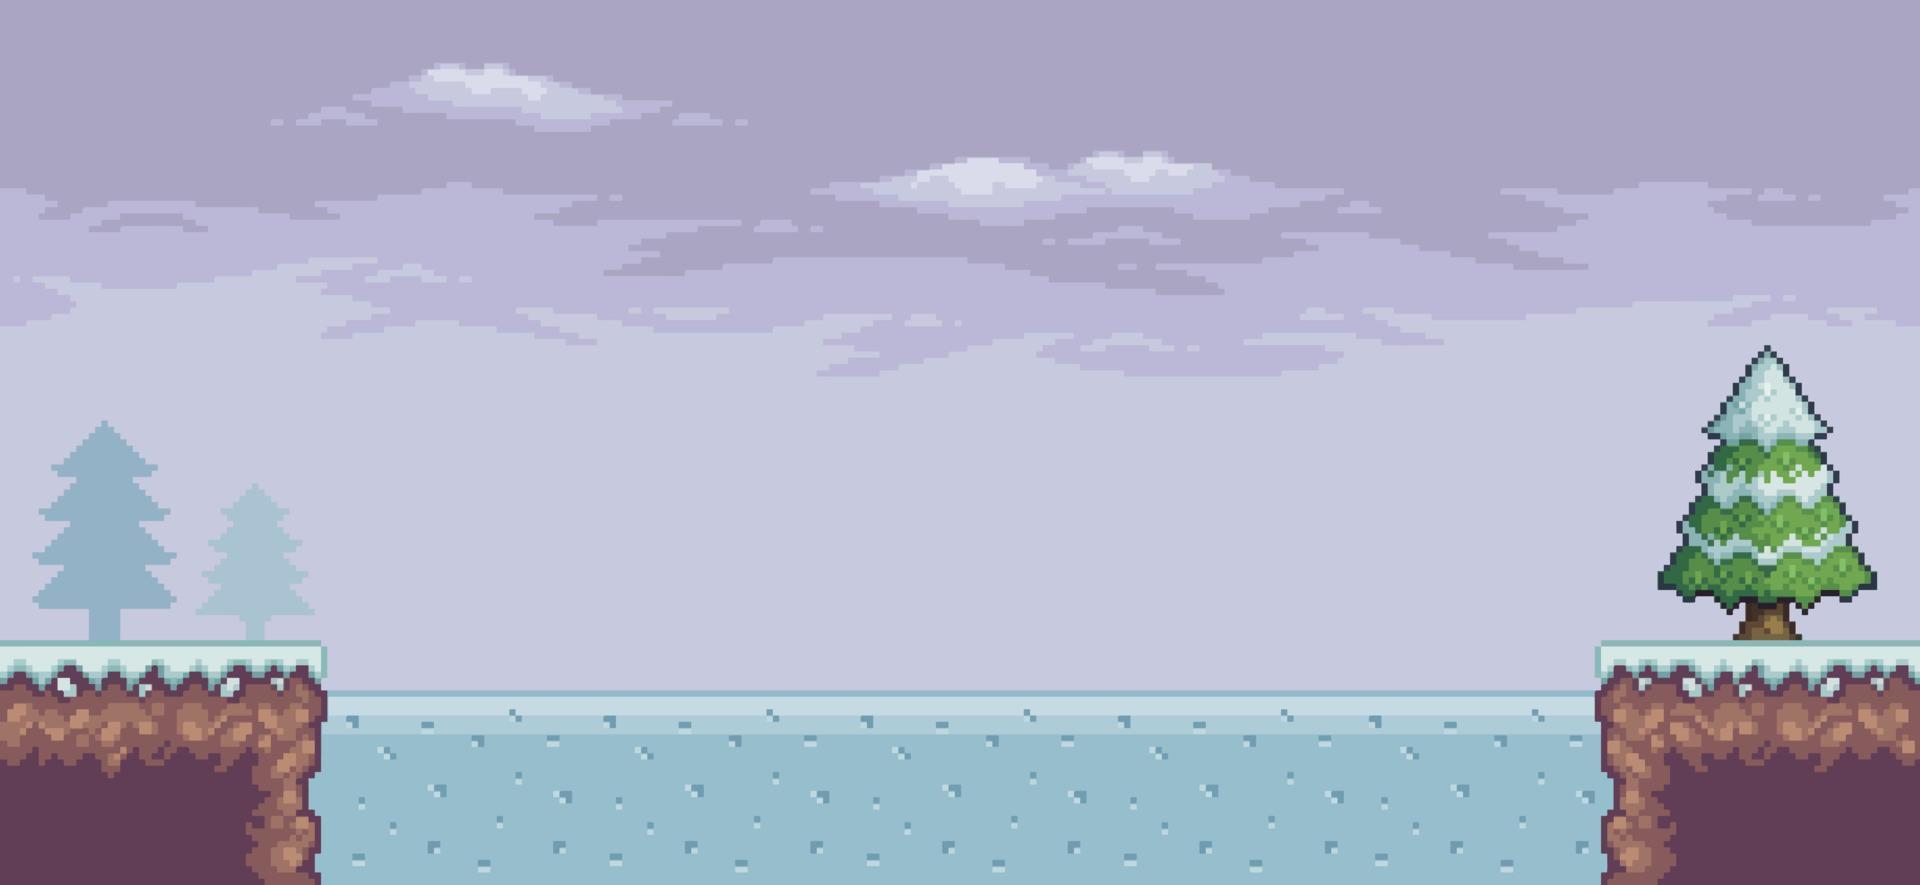 scène de jeu pixel art dans la neige avec des pins, lac gelé, fond de nuages 8bit vecteur